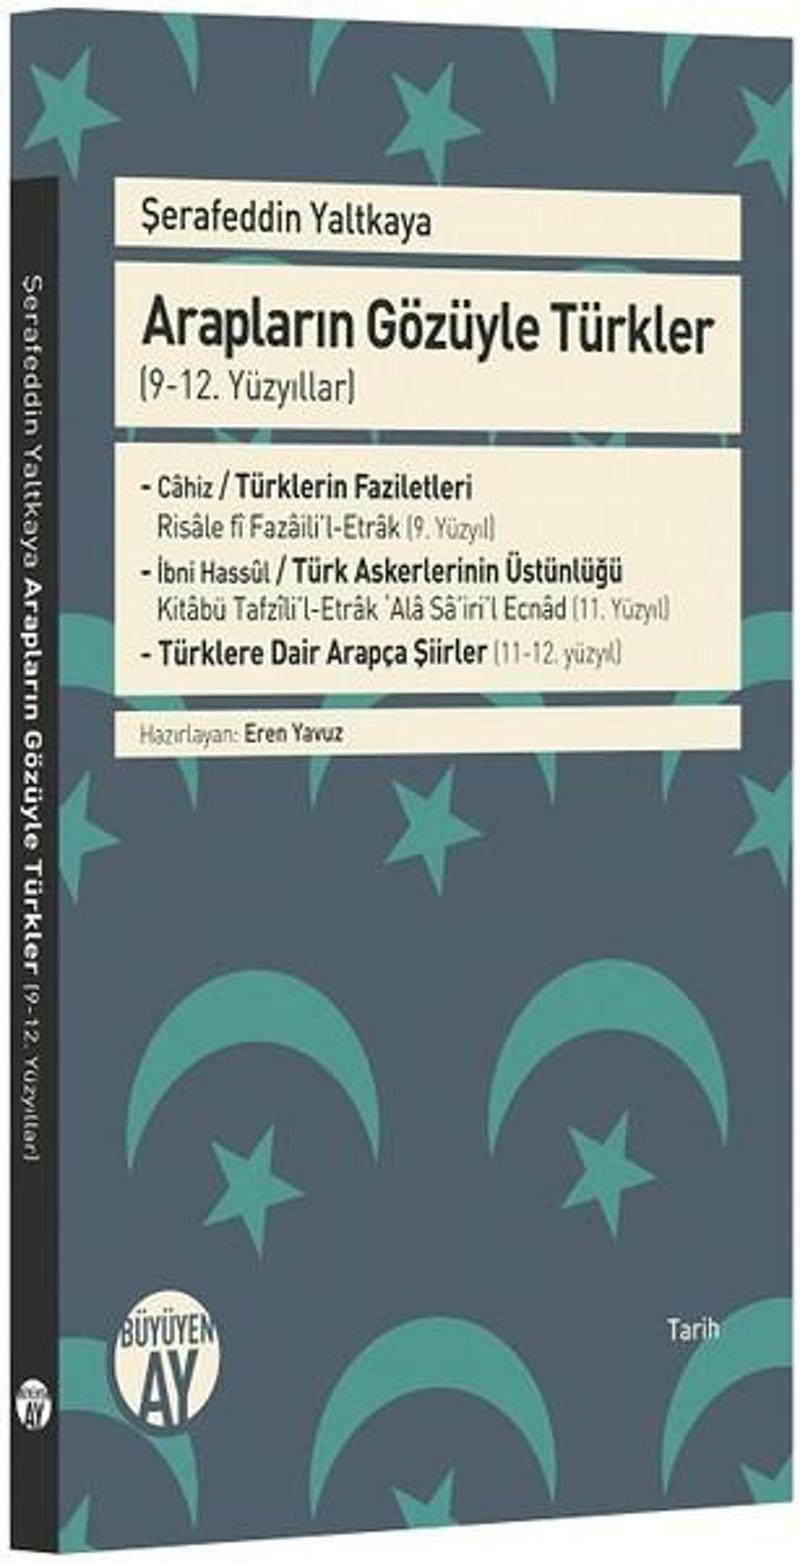 Büyüyenay Yayınları Arapların Gözüyle Türkler (9-12. Yüzyıllar) - Mehmed Şerefeddin Yaltkaya